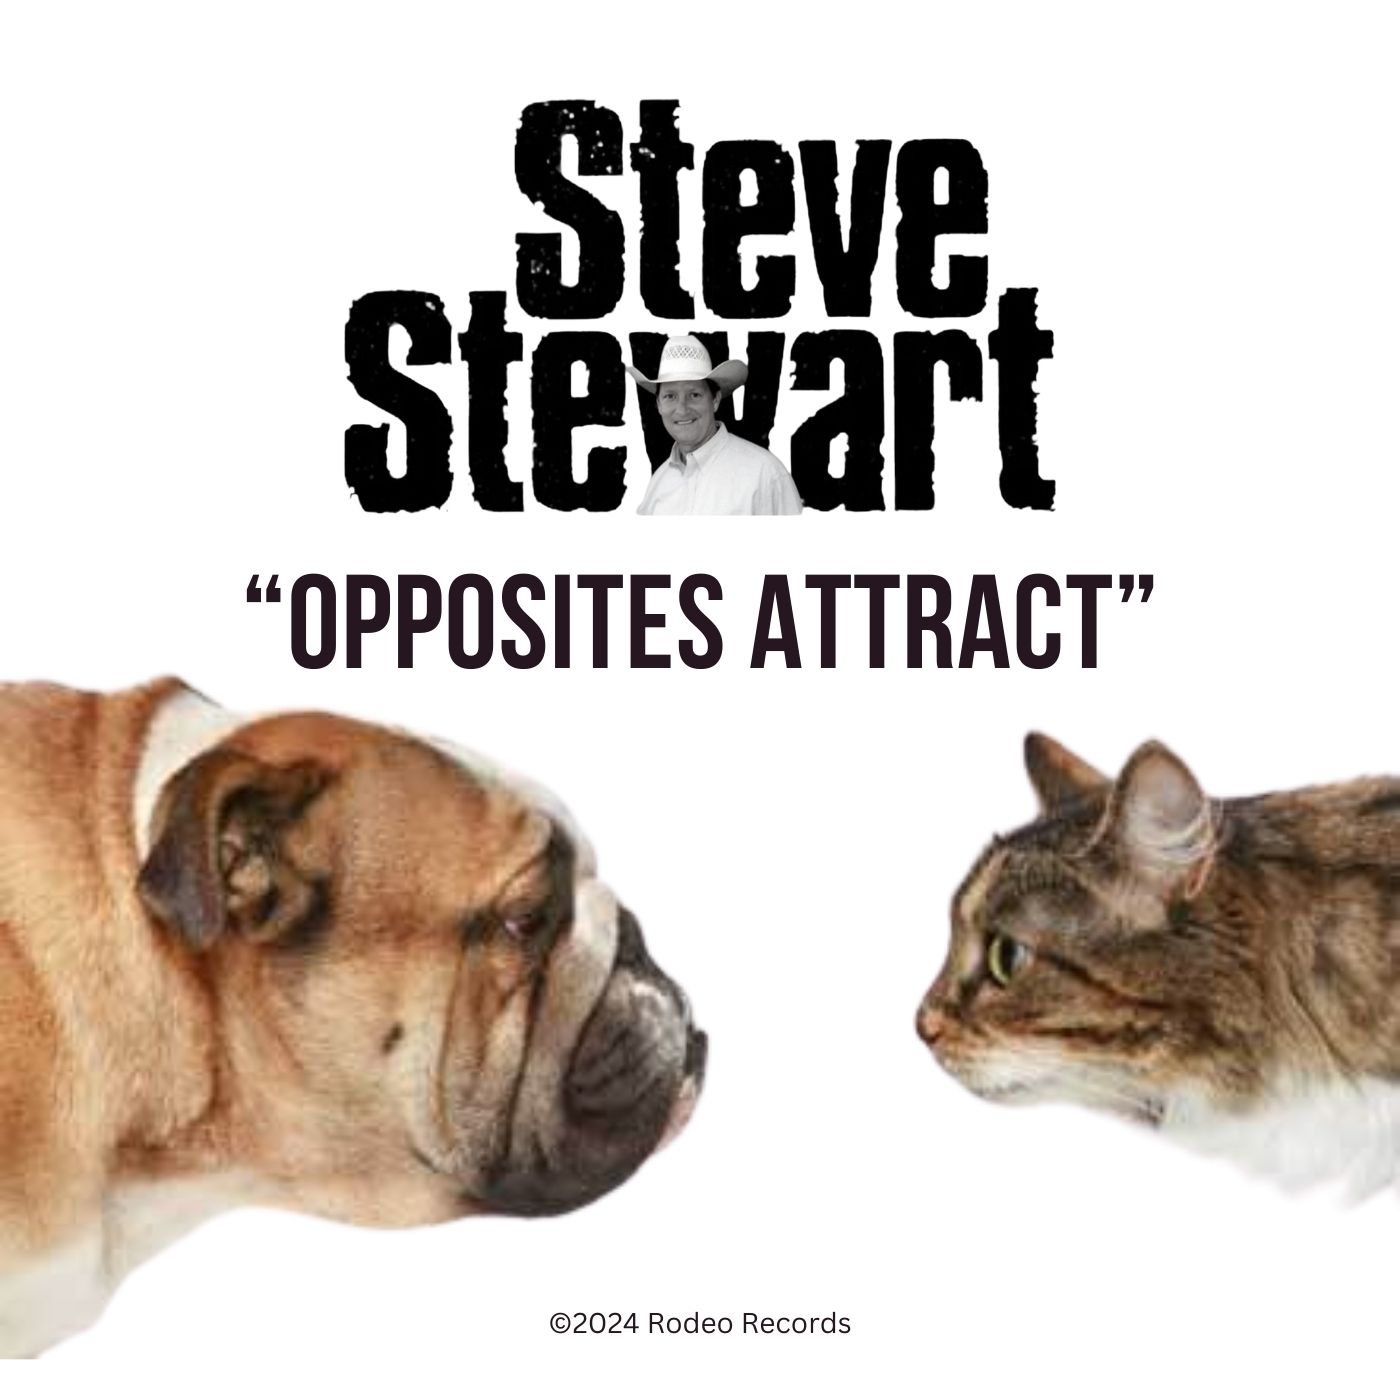 Art for Opposites Attract - Steve Stewart by Steve Stewart